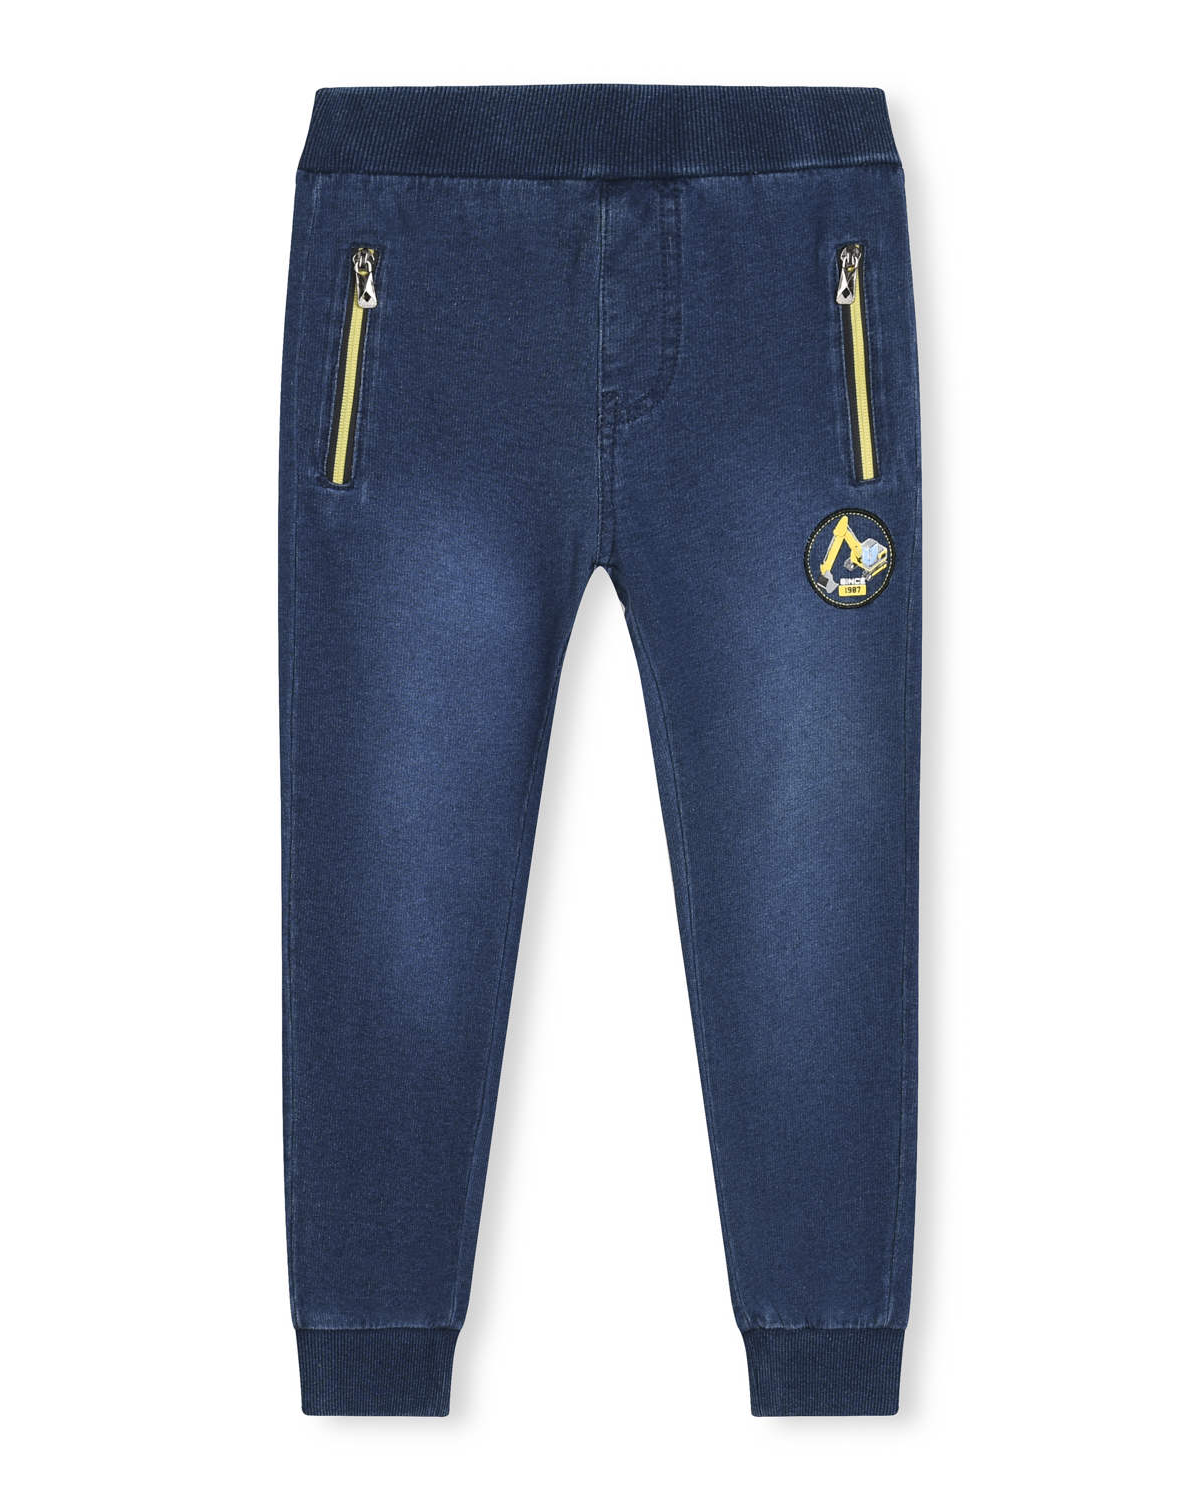 Chlapecké riflové kalhoty / tepláky - KUGO TM8259K, modrá / tyrkysové zipy Barva: Modrá, Velikost: 116